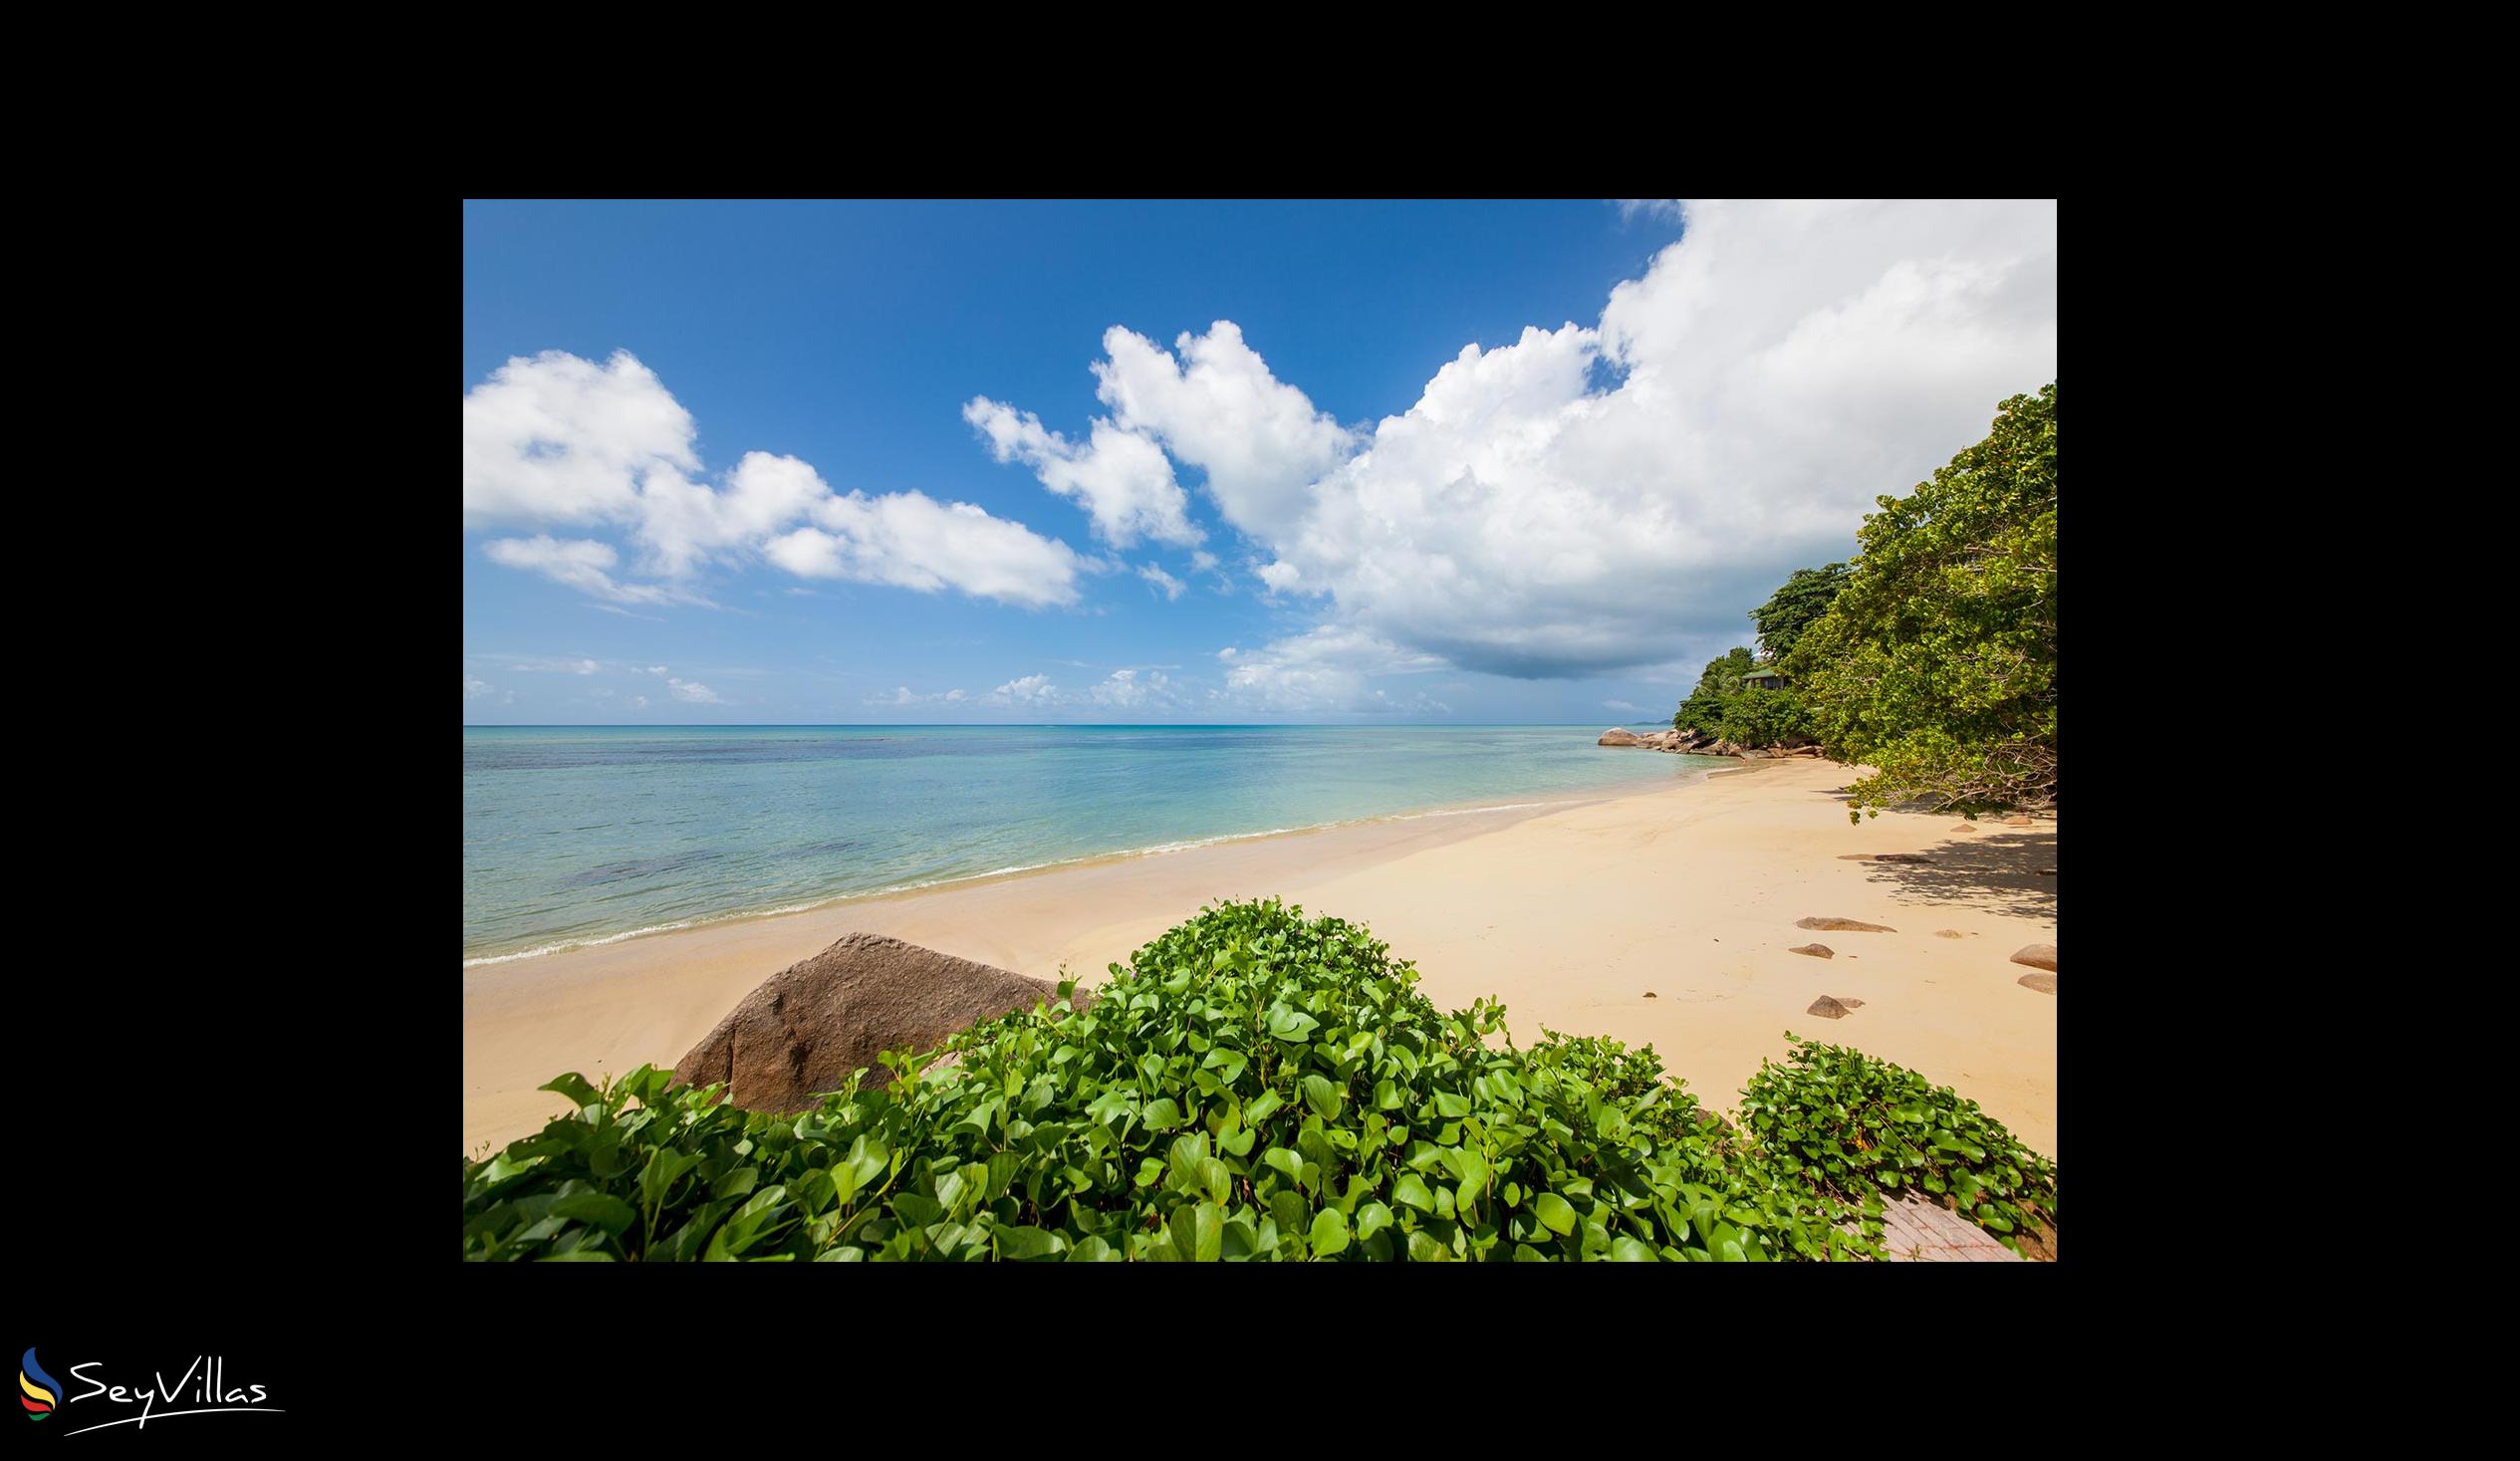 Photo 43: Coco de Mer & Black Parrot Suites - Beaches - Praslin (Seychelles)